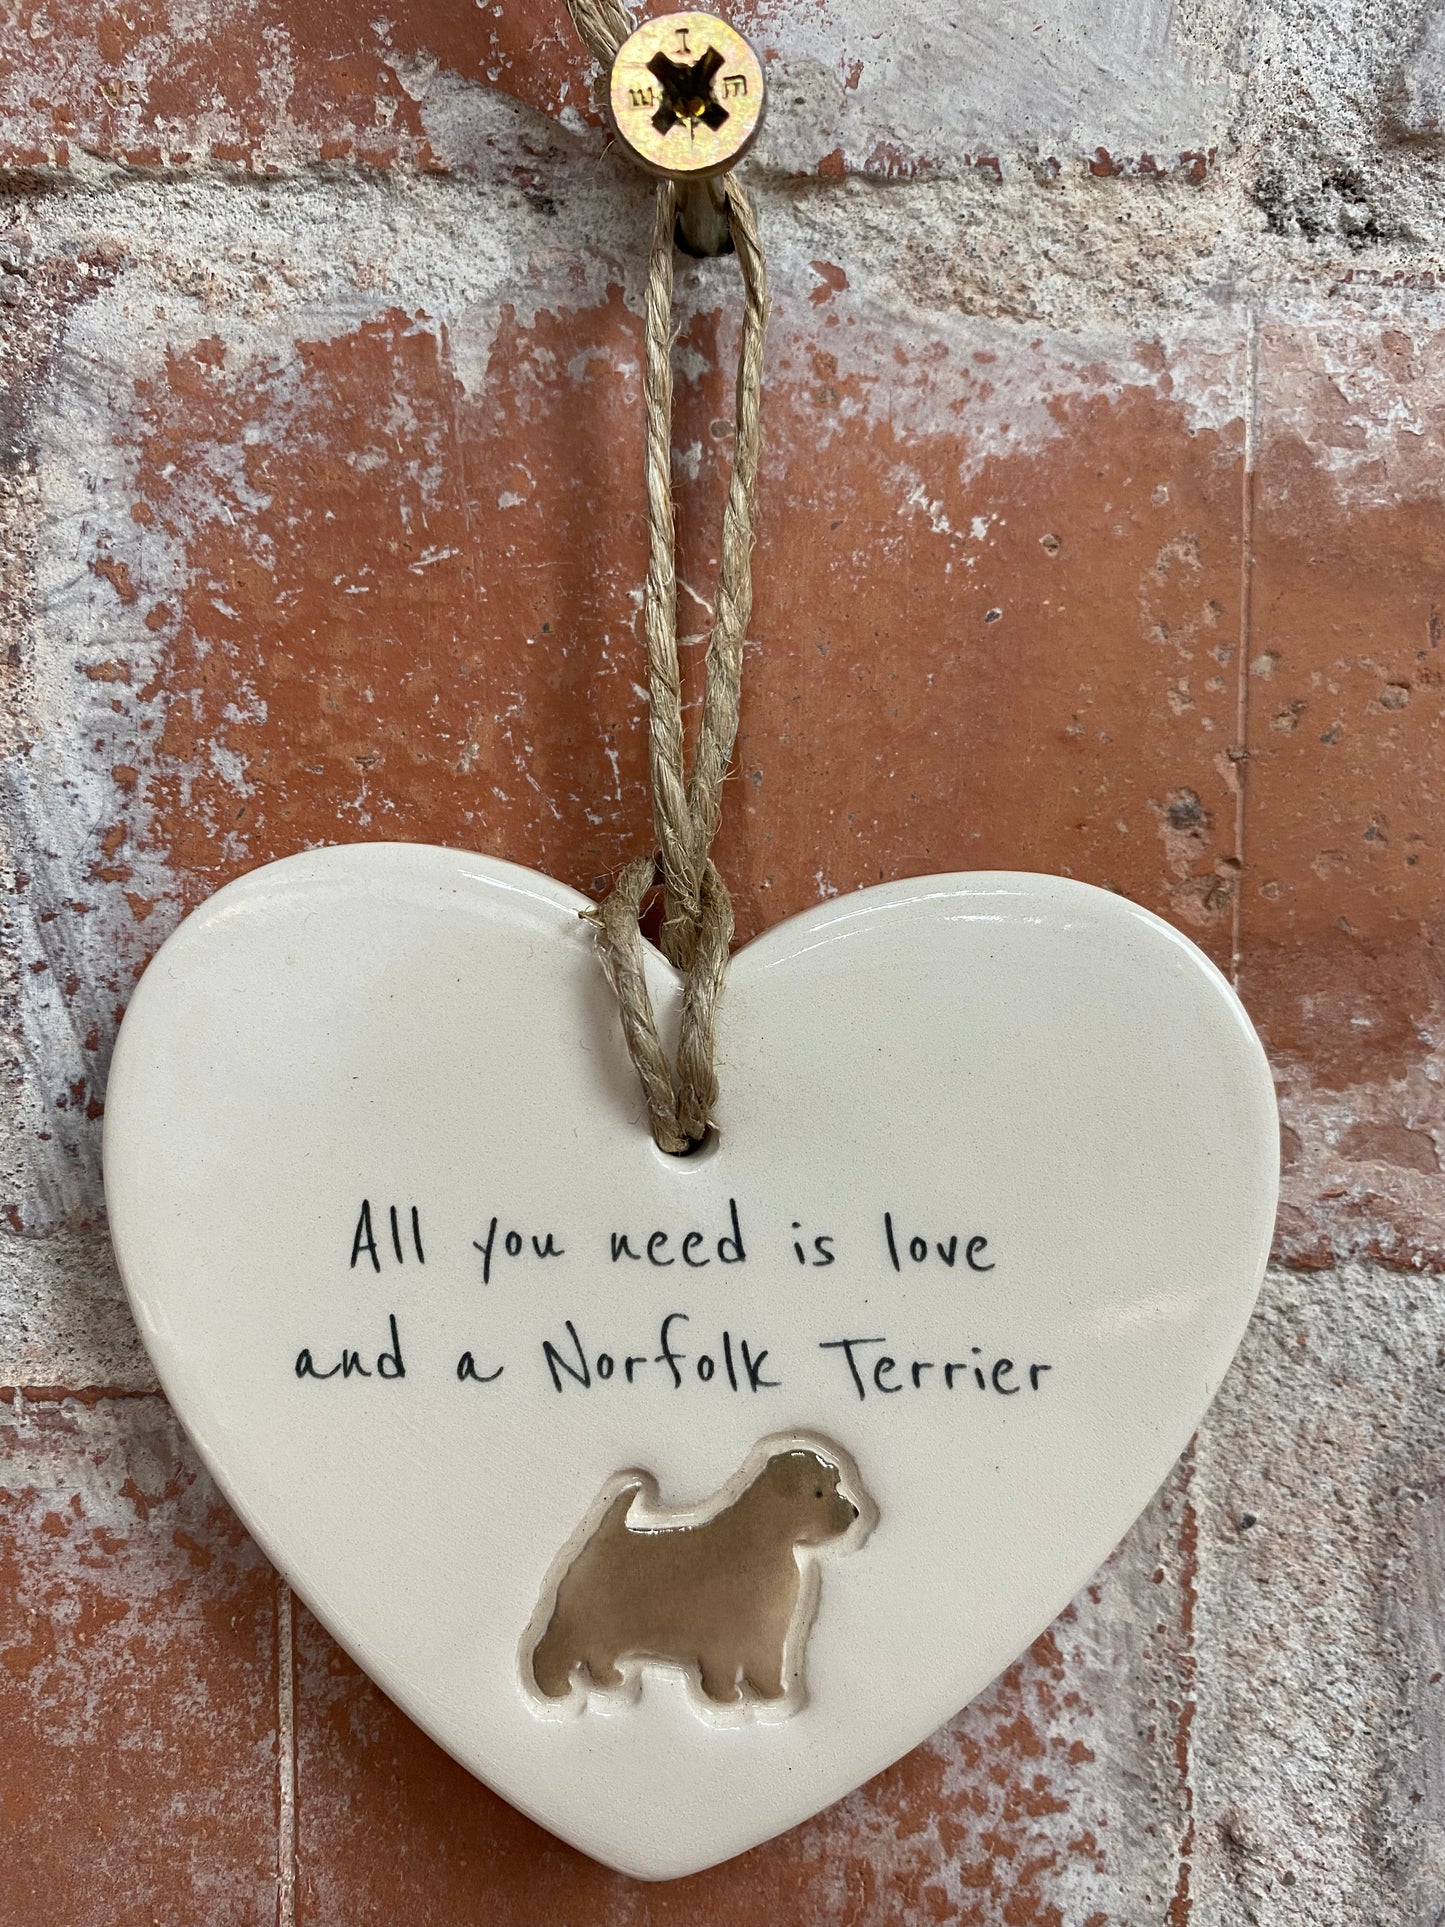 Norfolk Terrier ceramic heart